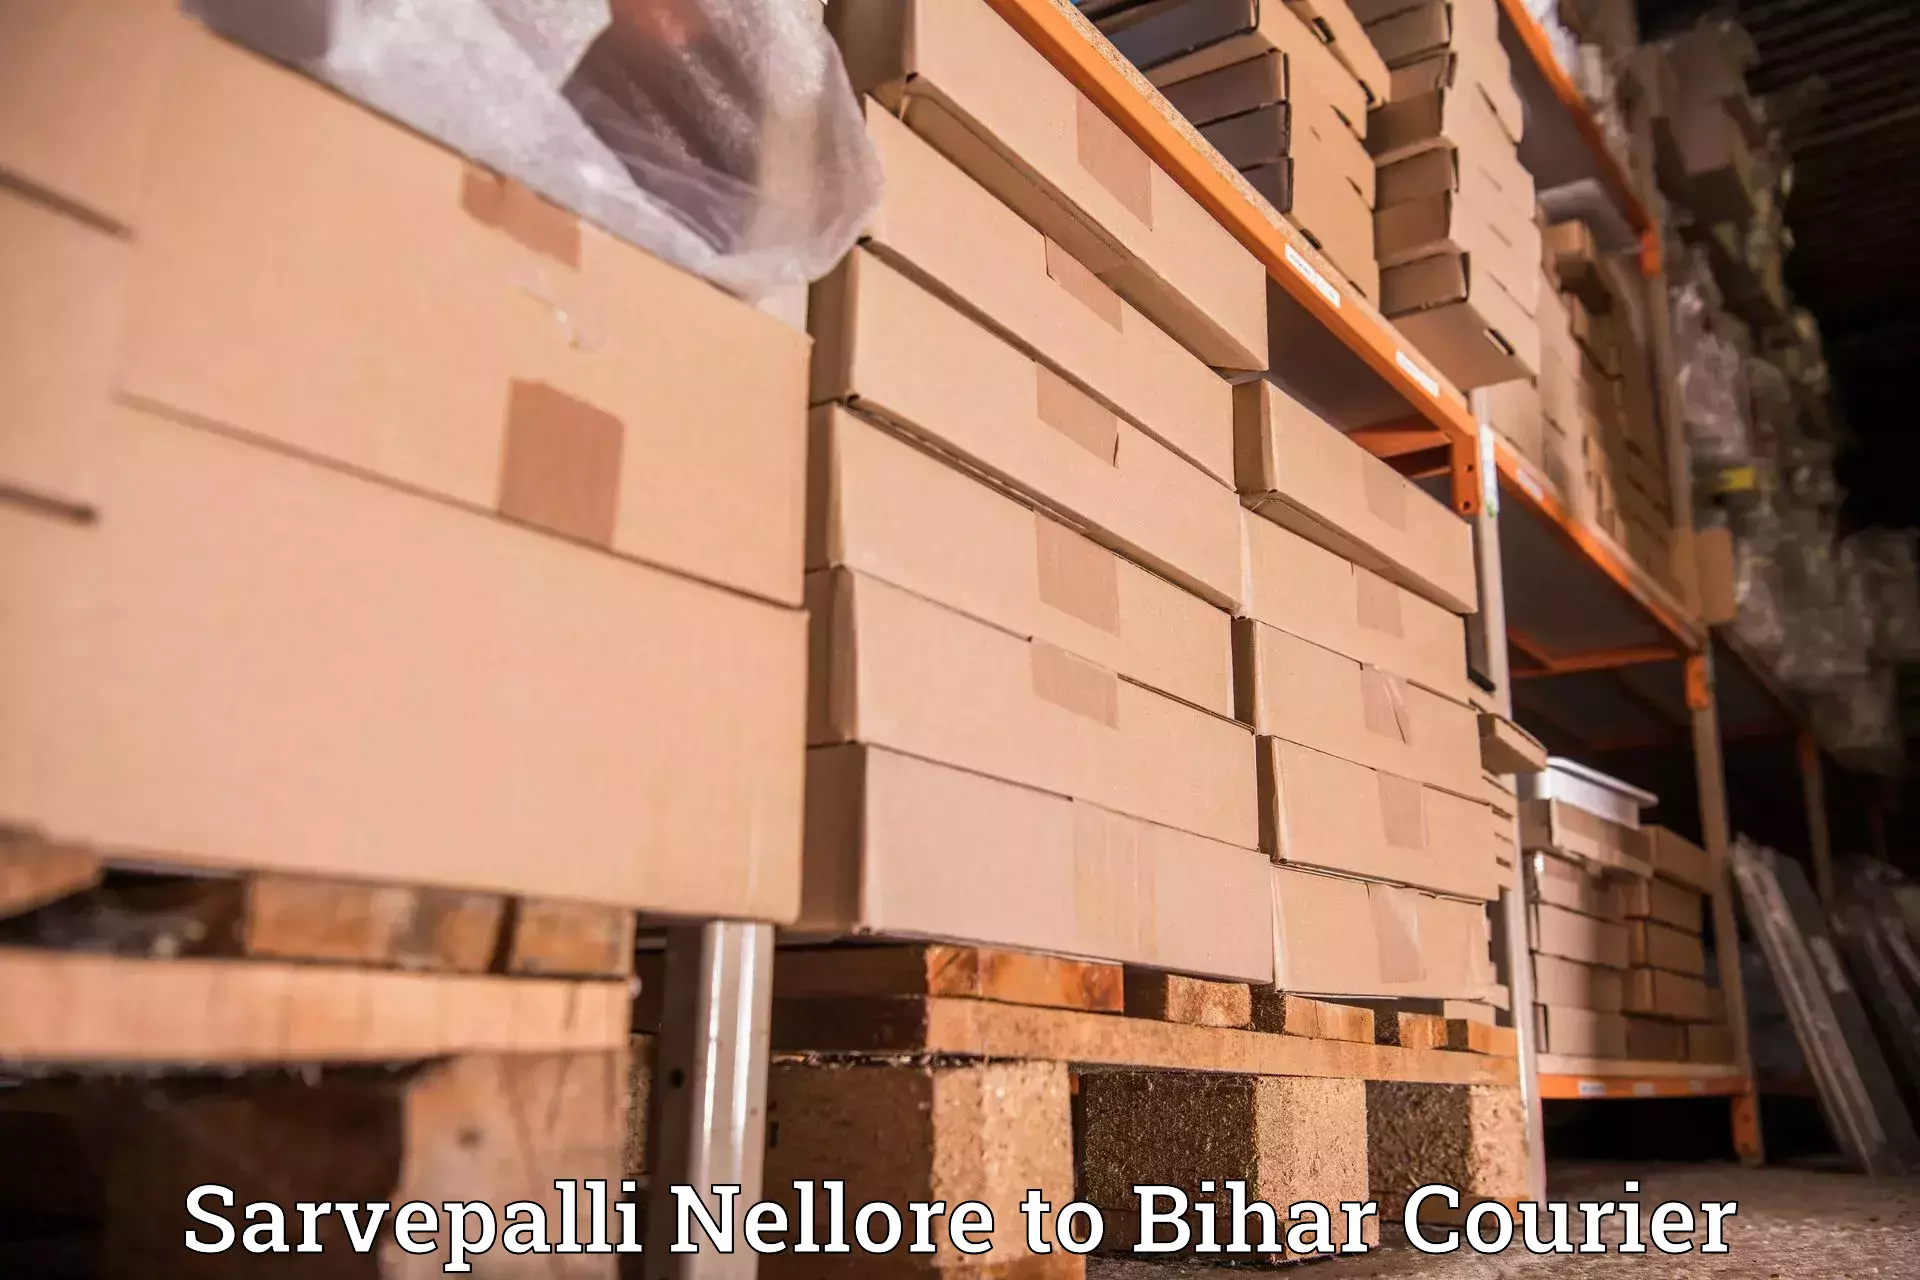 Local delivery service Sarvepalli Nellore to Bhorey